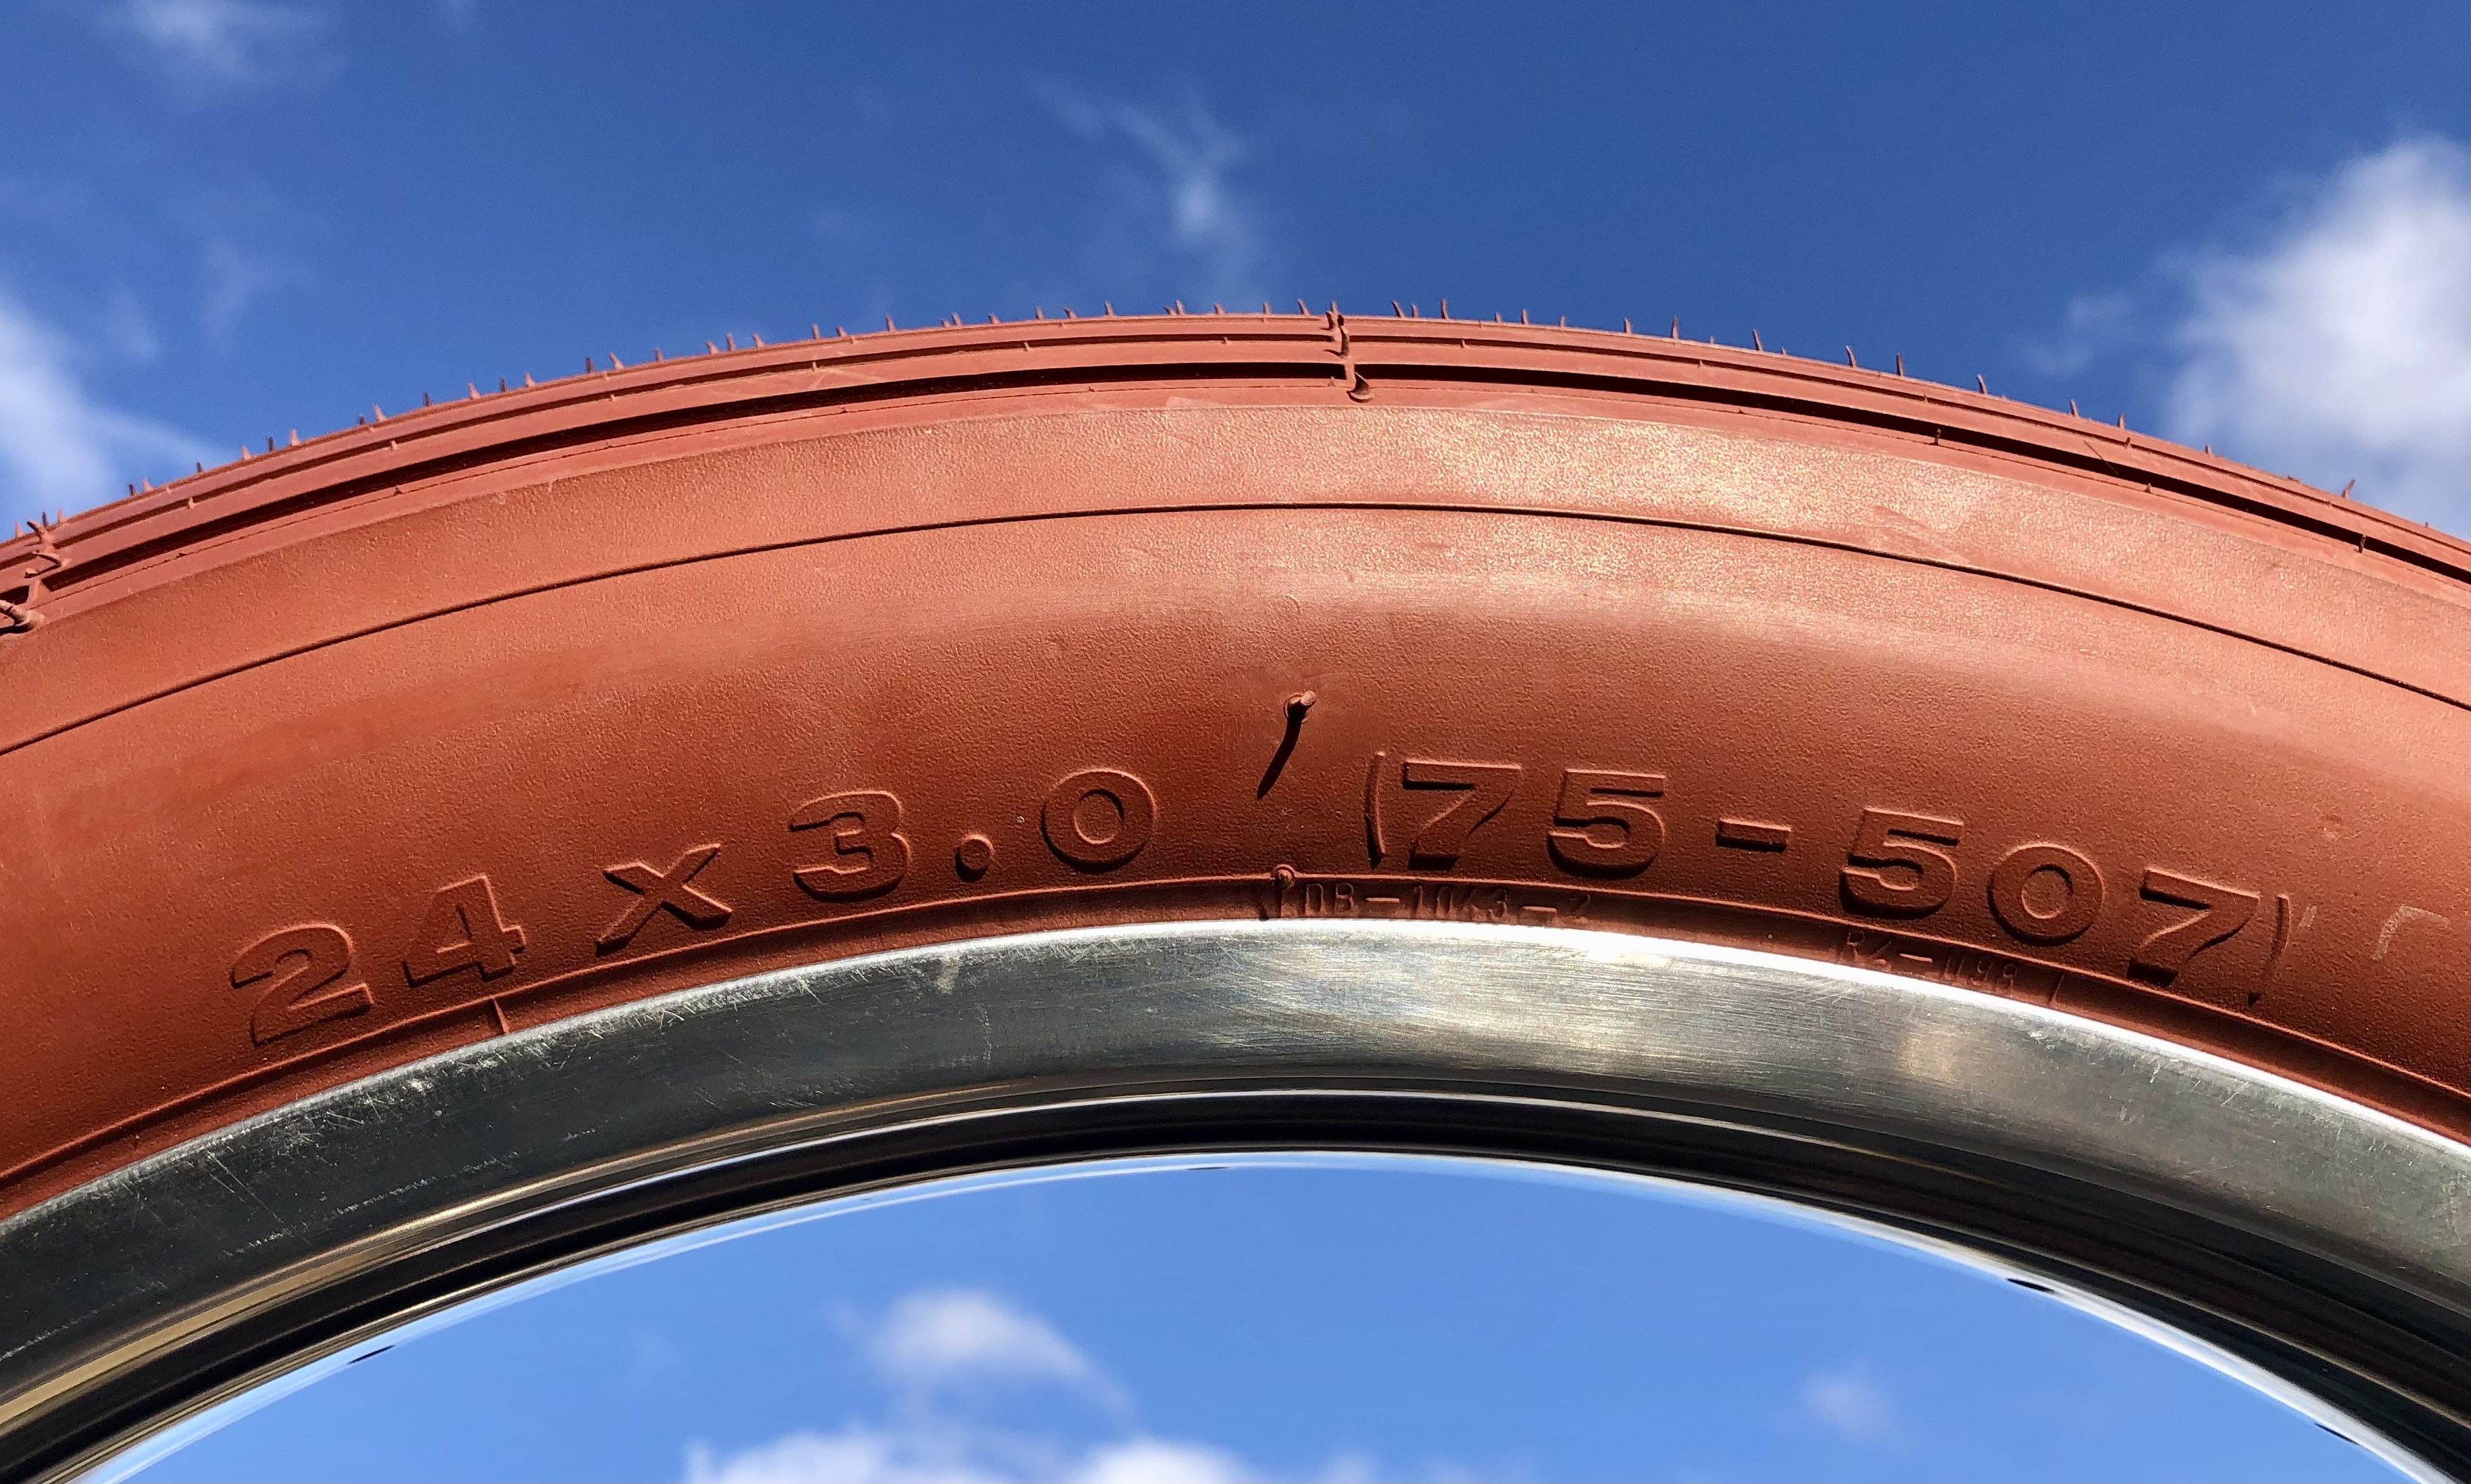 24 x 3.0 Thick Brick Tire clay / brick color